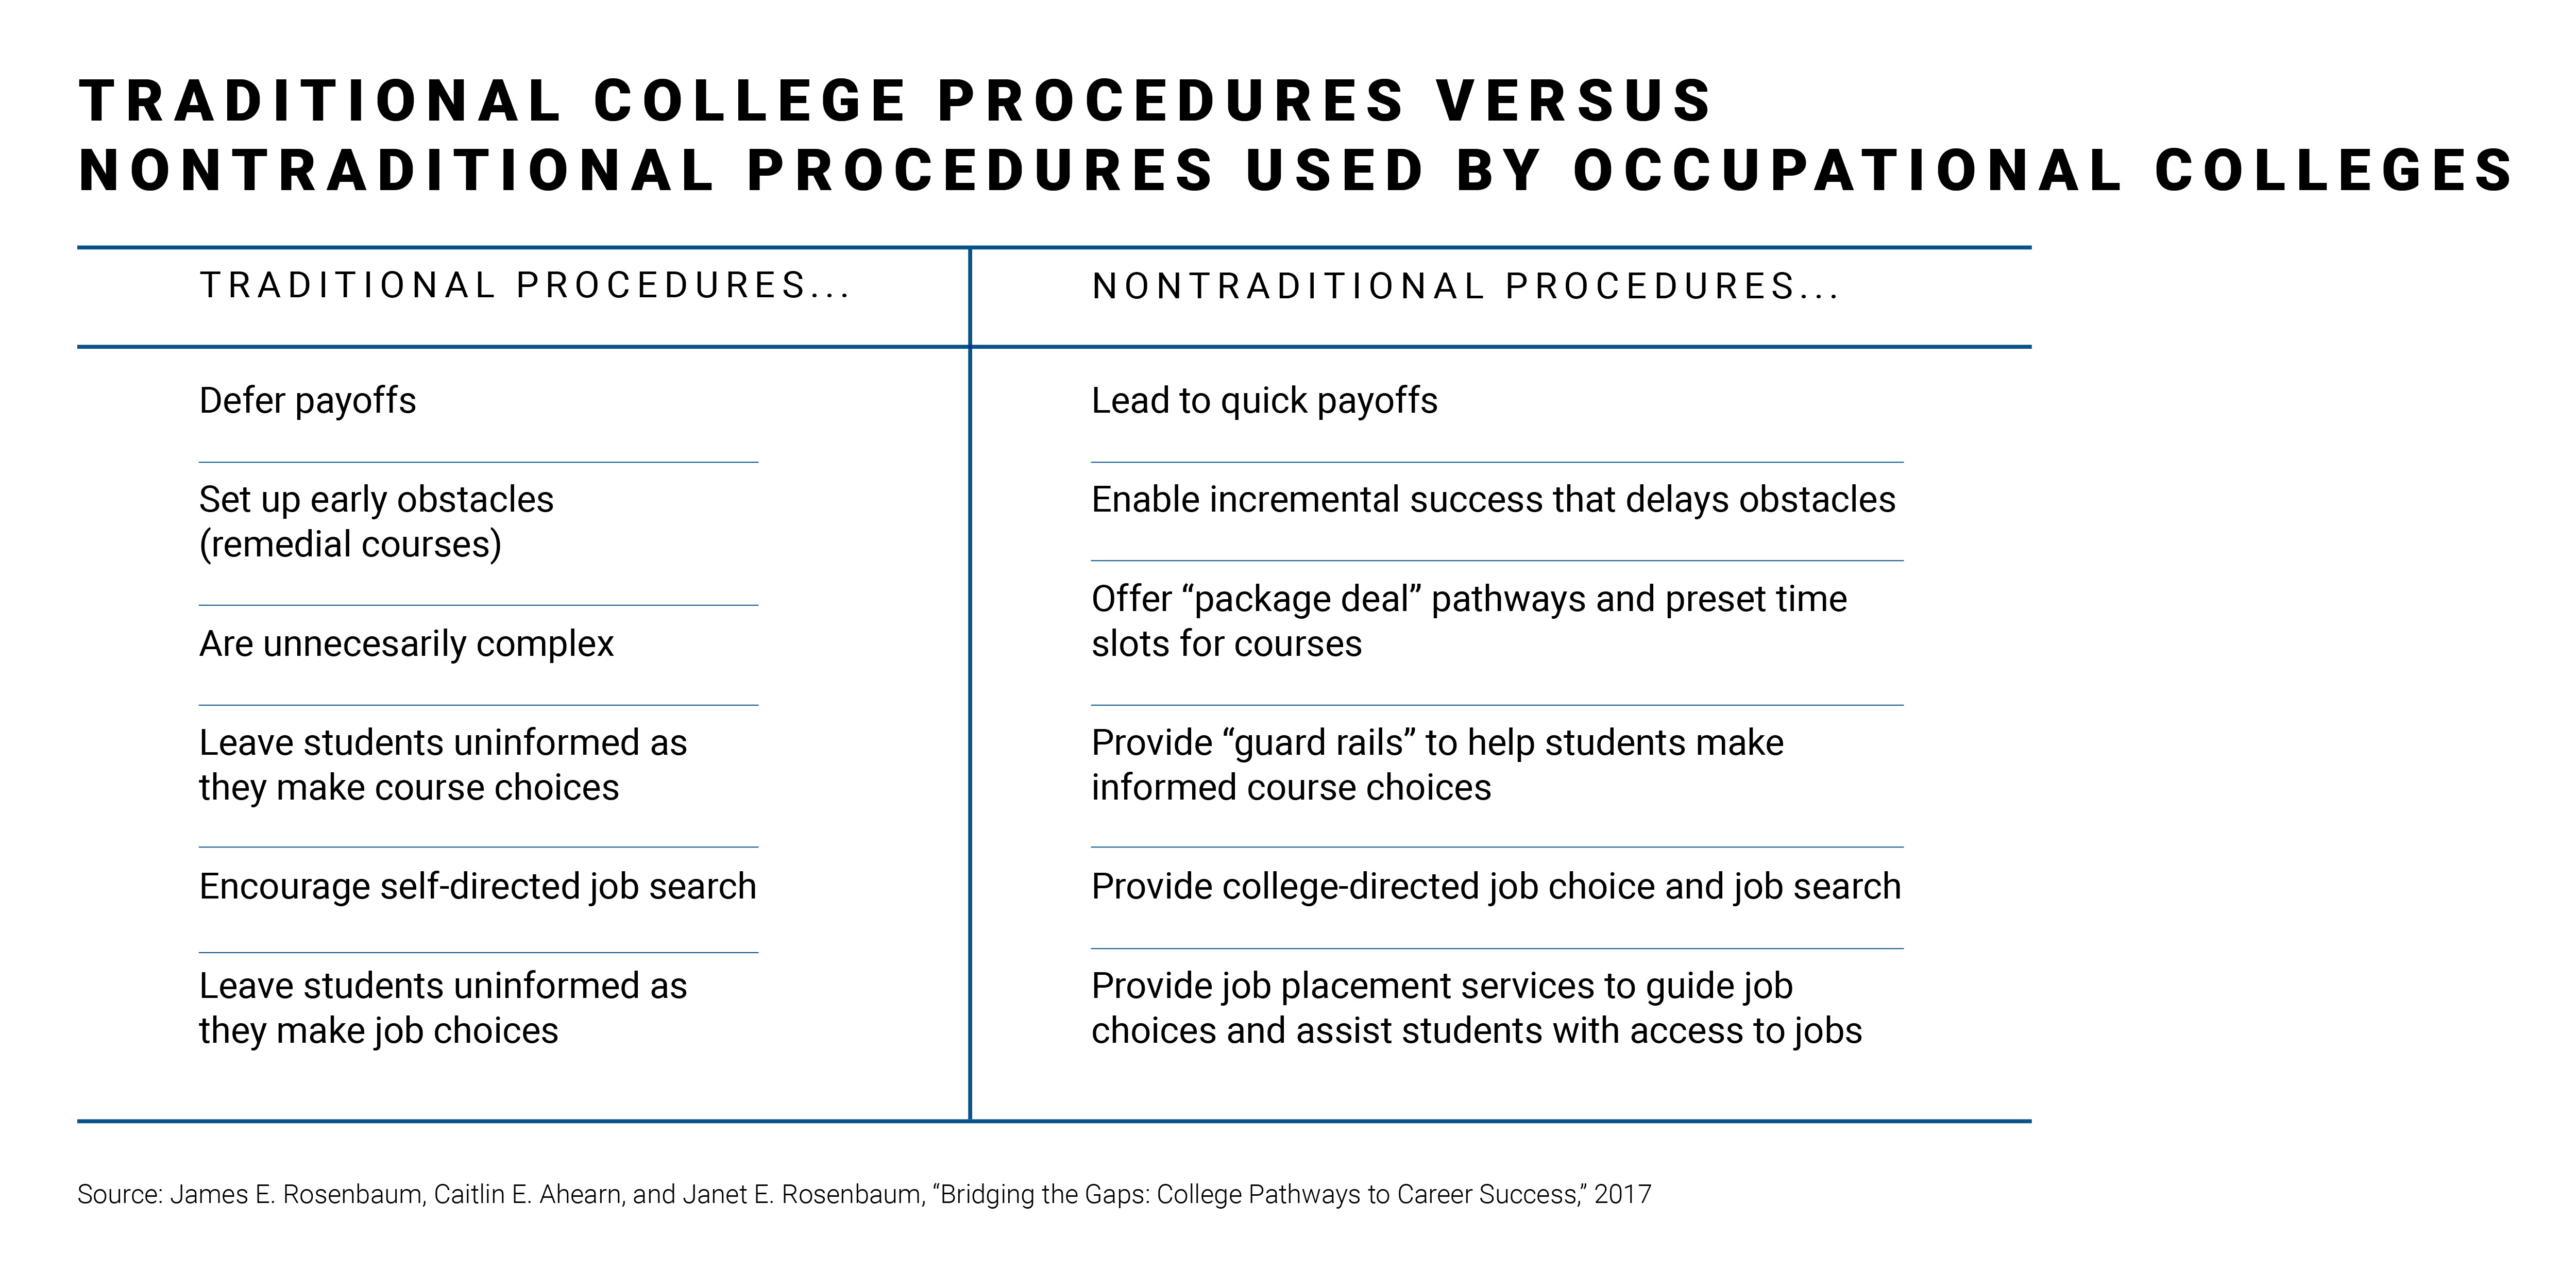 Traditional college procedures versus nontraditional procedures used by occupational colleges